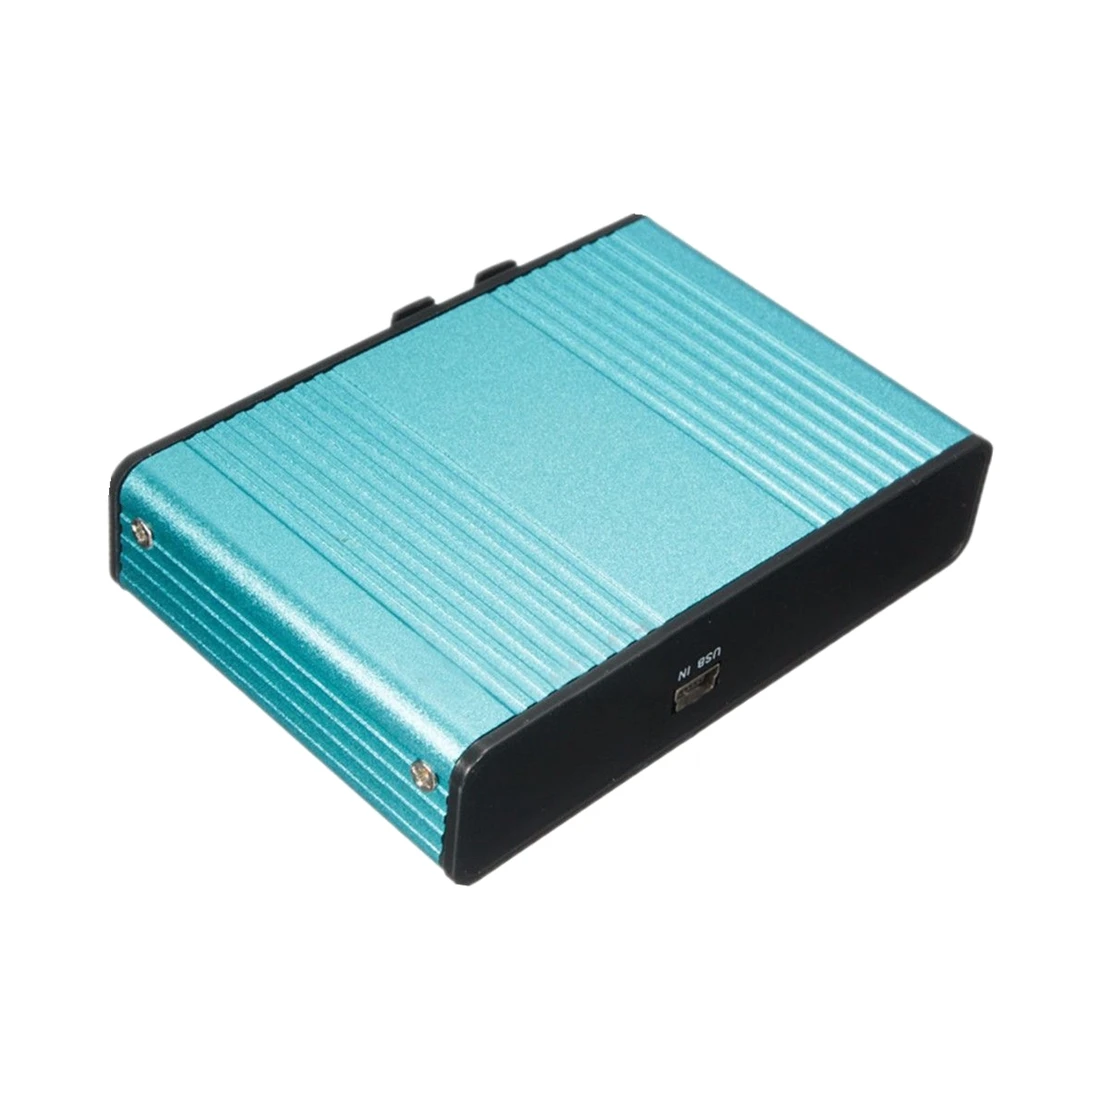 Внешняя звуковая карта USB 6 канальный 5,1 аудио S/PDIF оптическая Звуковая карта для PC светильник синий